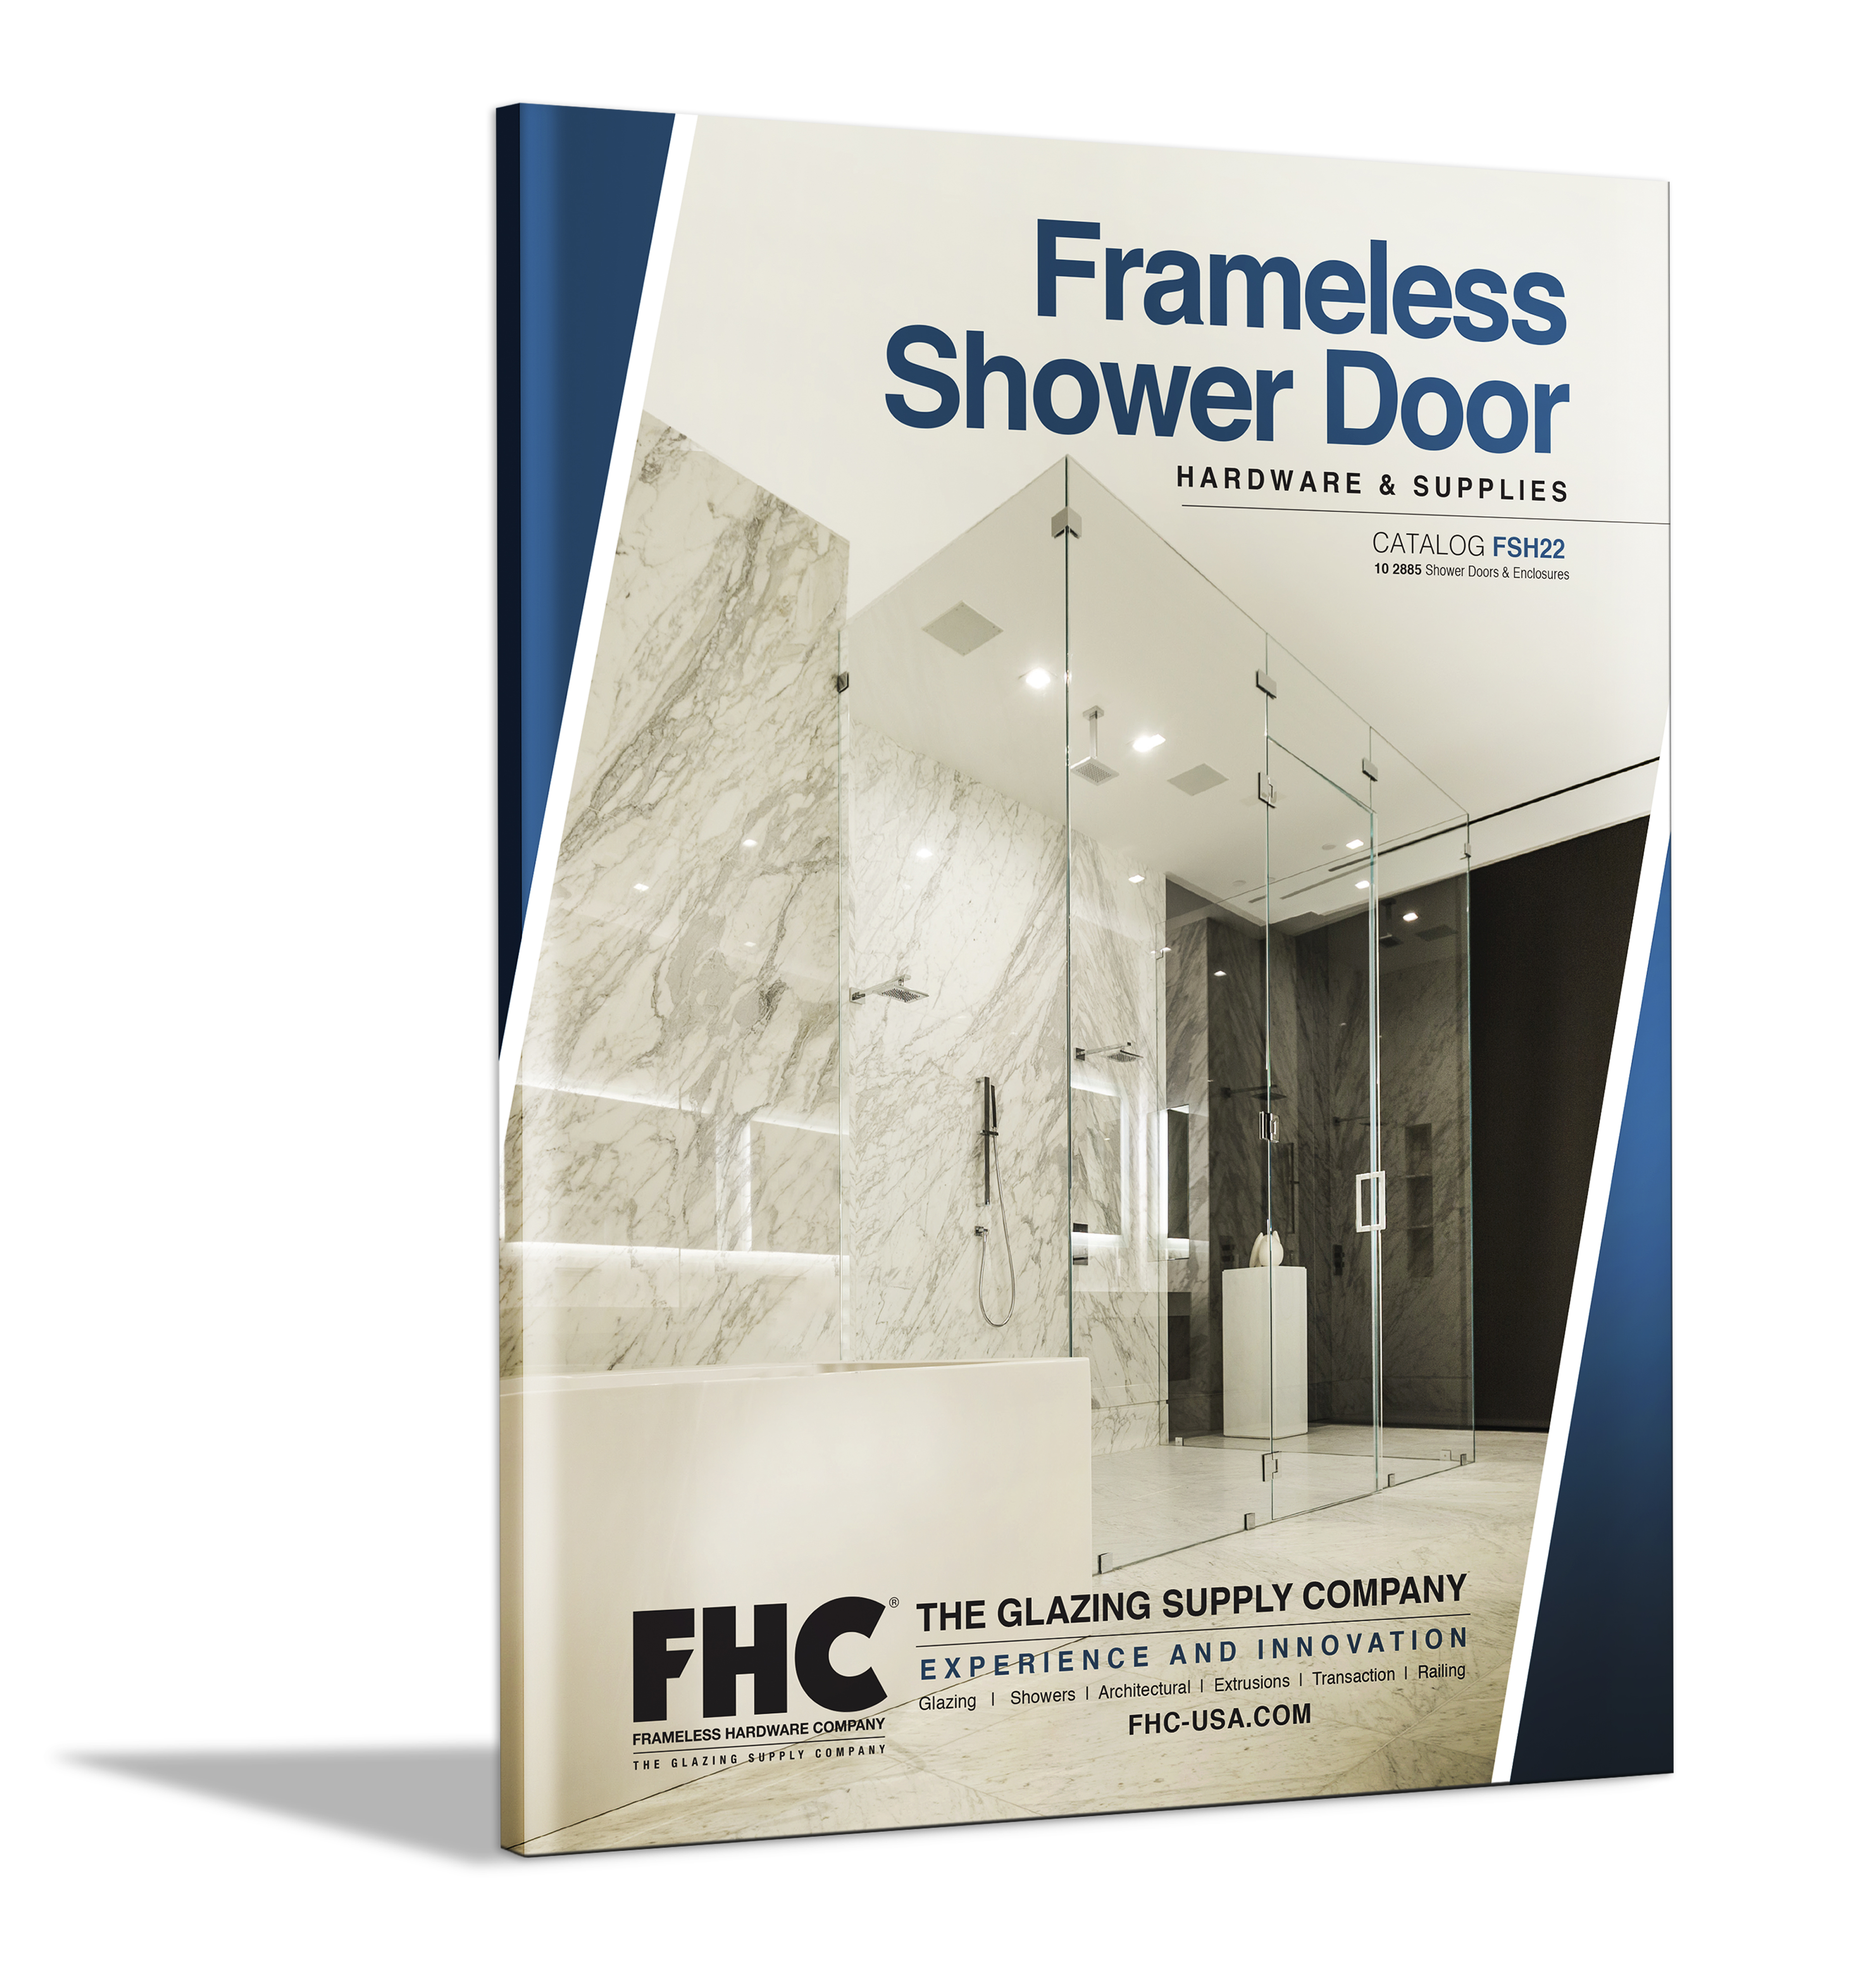 FSH22 Frameless Shower Door Hardware Catalog